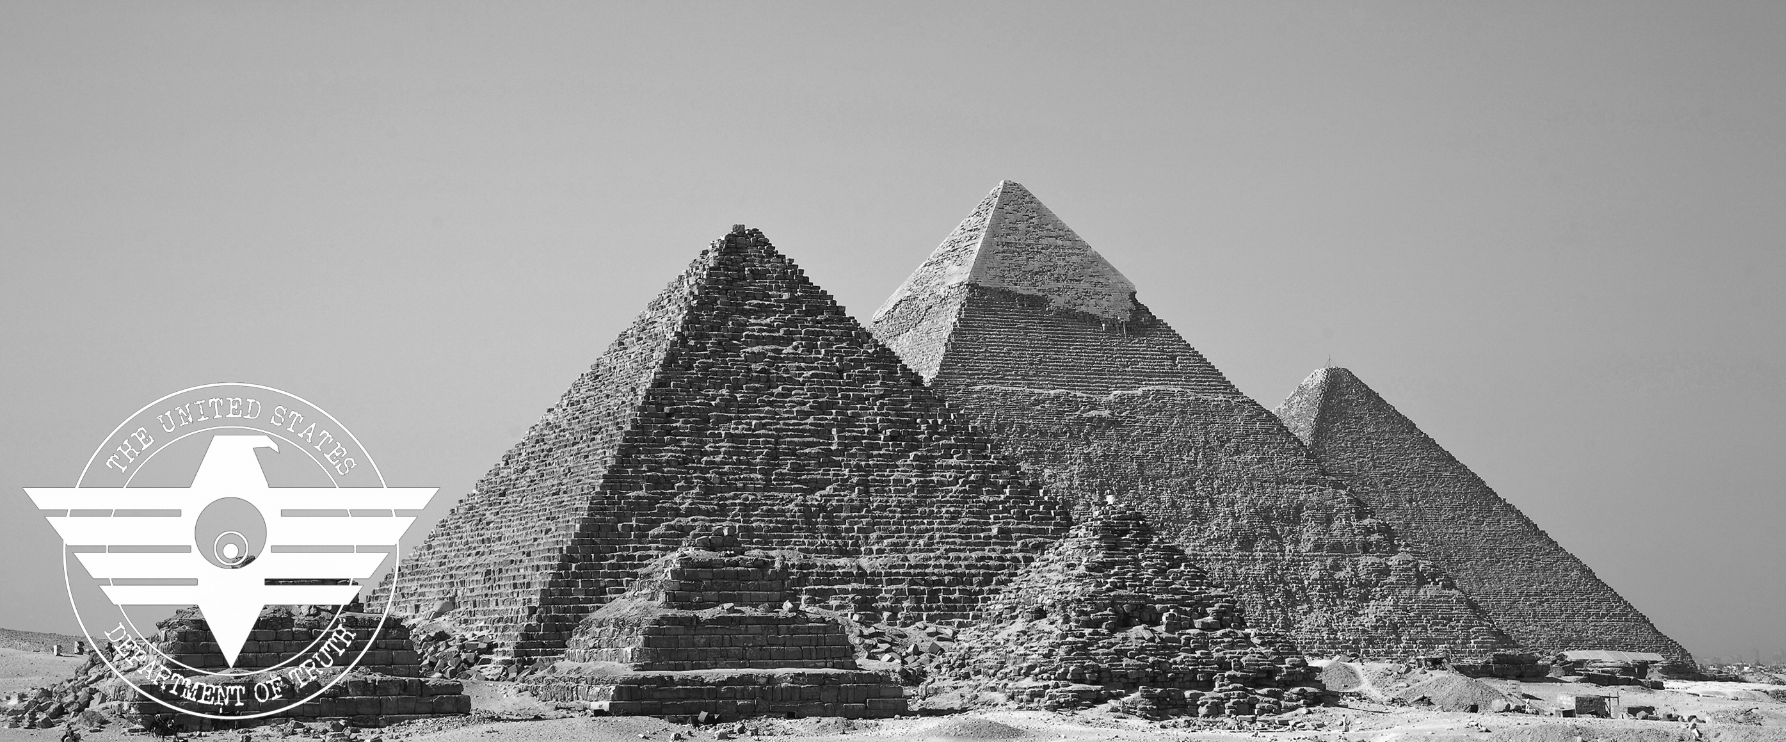 Who built the Pyramids?